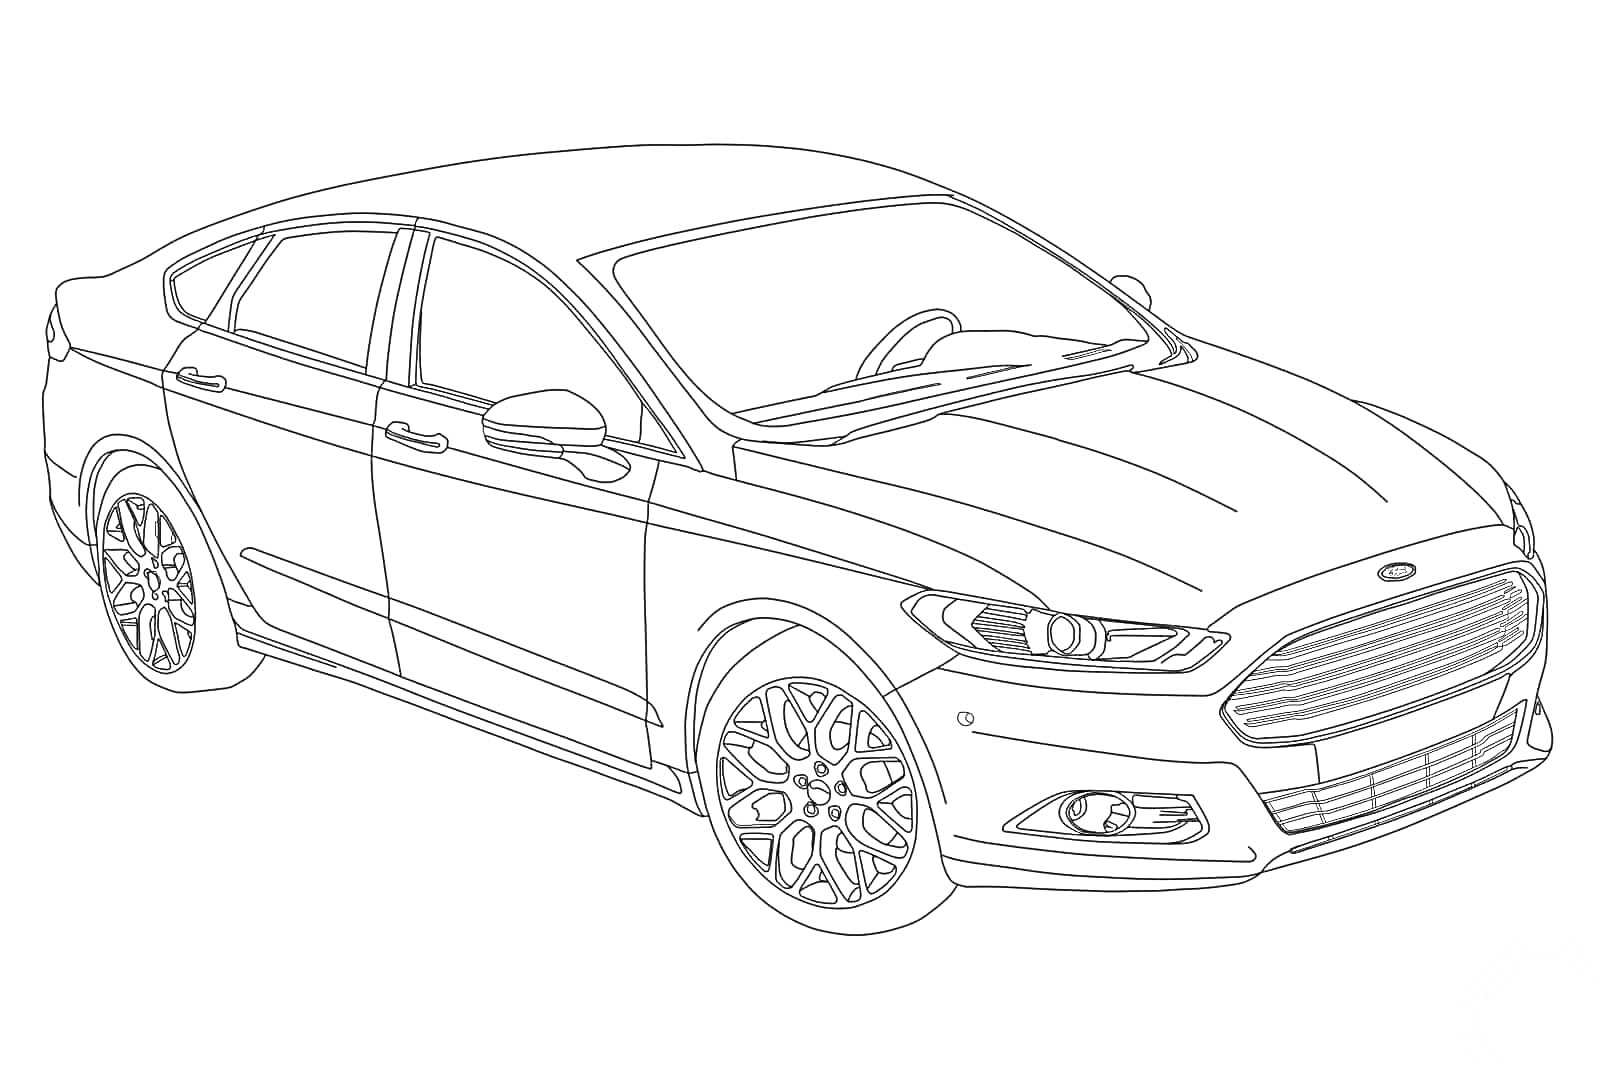 Раскраска автомобиля Ford, вид сбоку спереди, видны колеса, двери, стекла, фары и капот